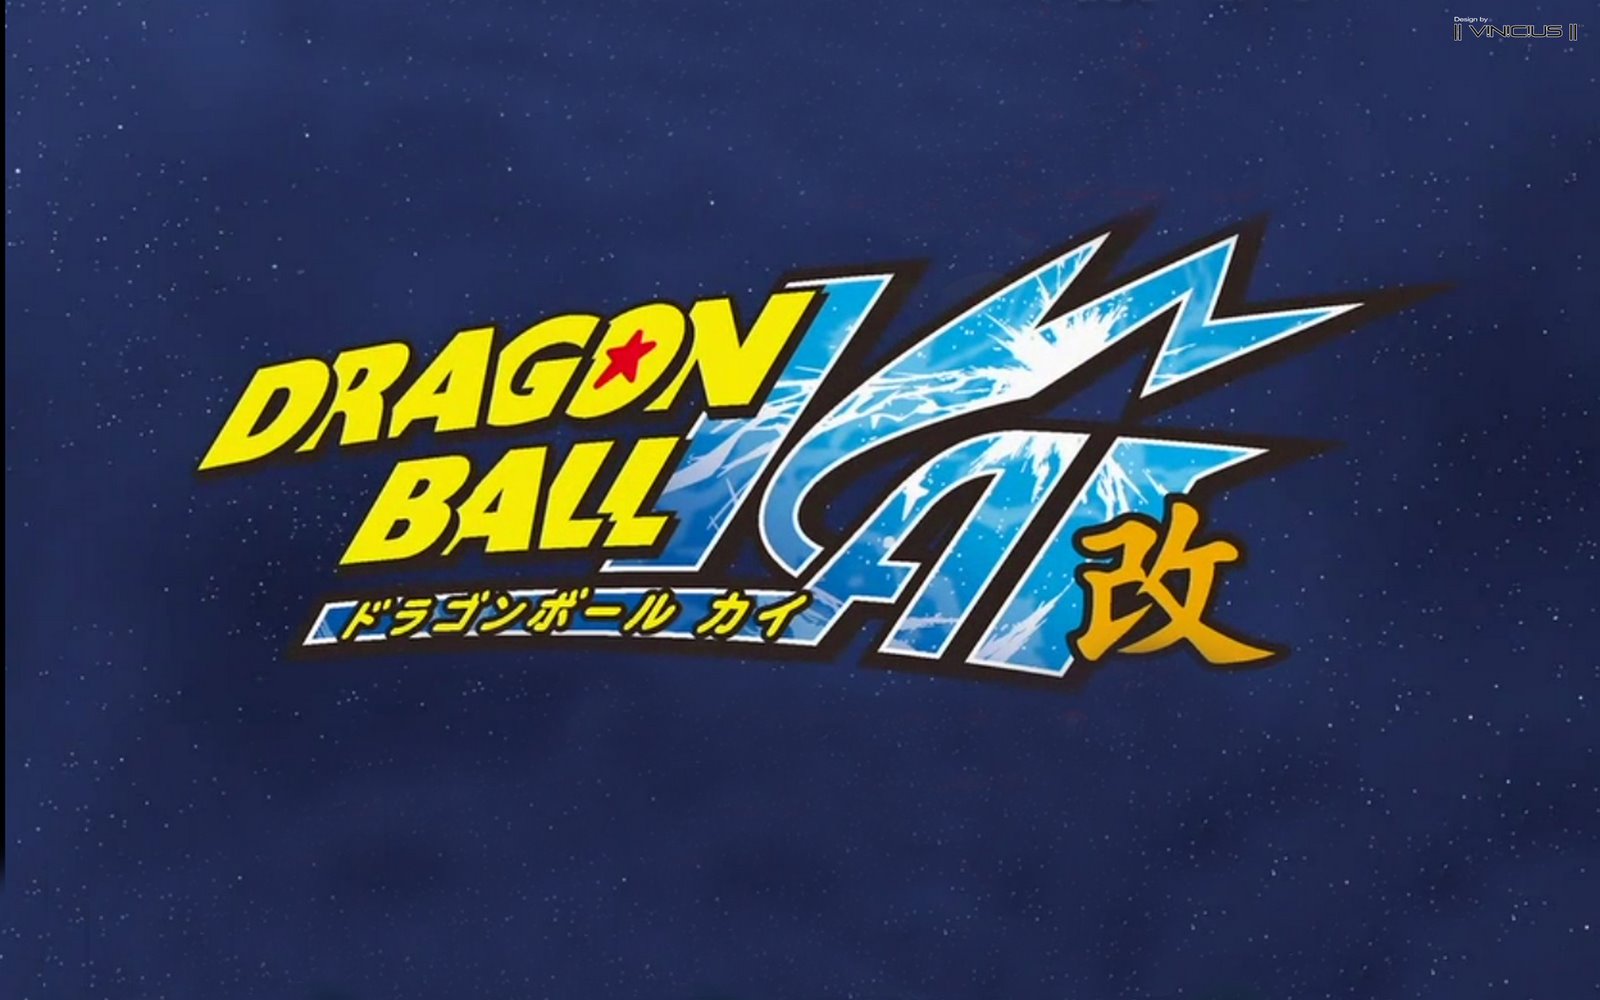 Dragon Ball Z Kai Wallpaper